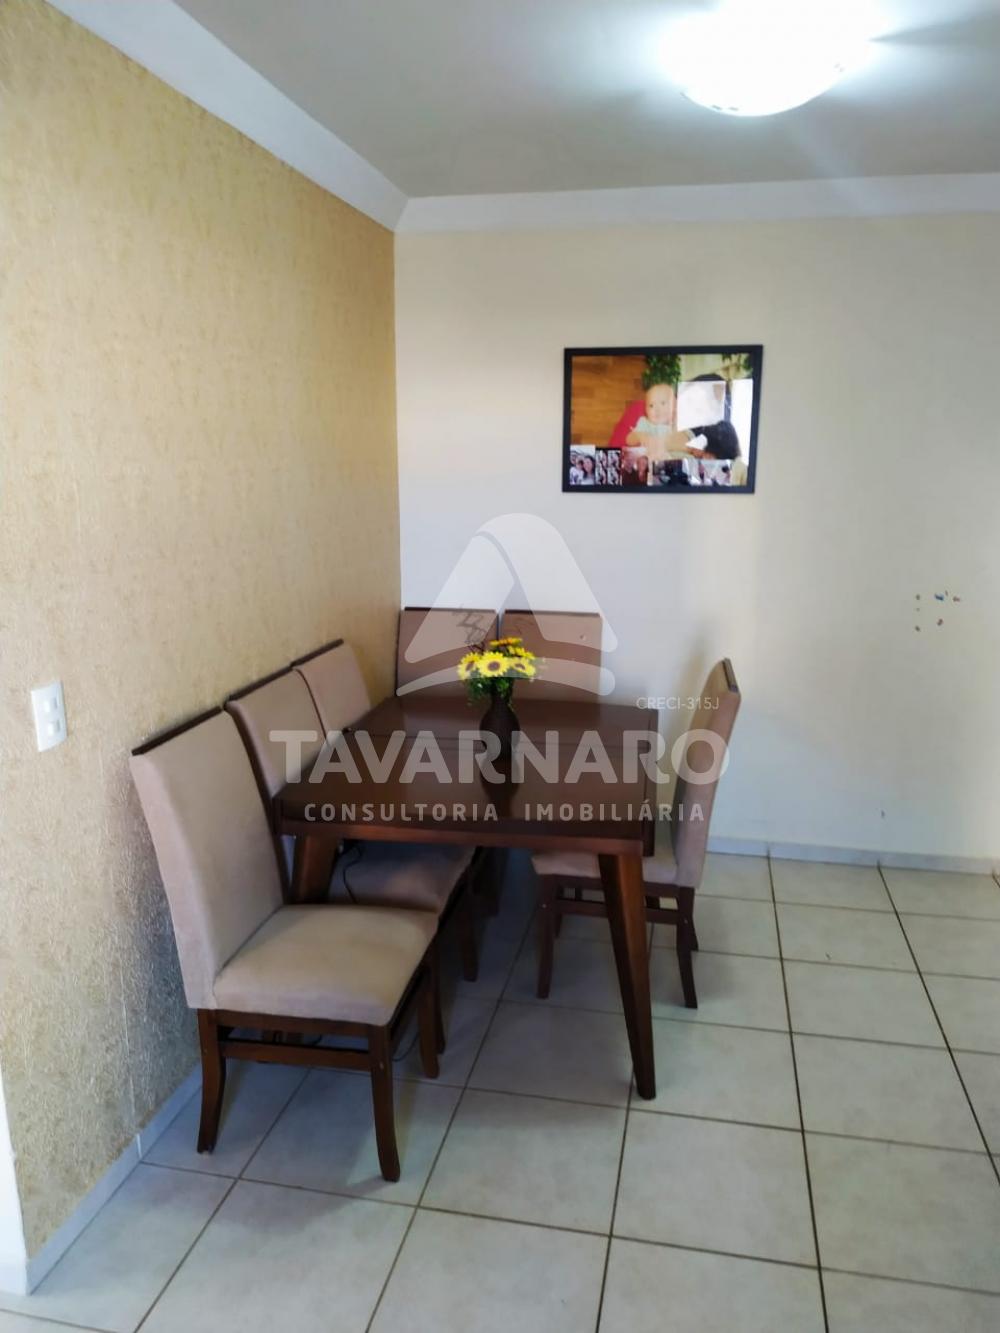 Comprar Apartamento / Padrão em Ponta Grossa R$ 118.000,00 - Foto 3